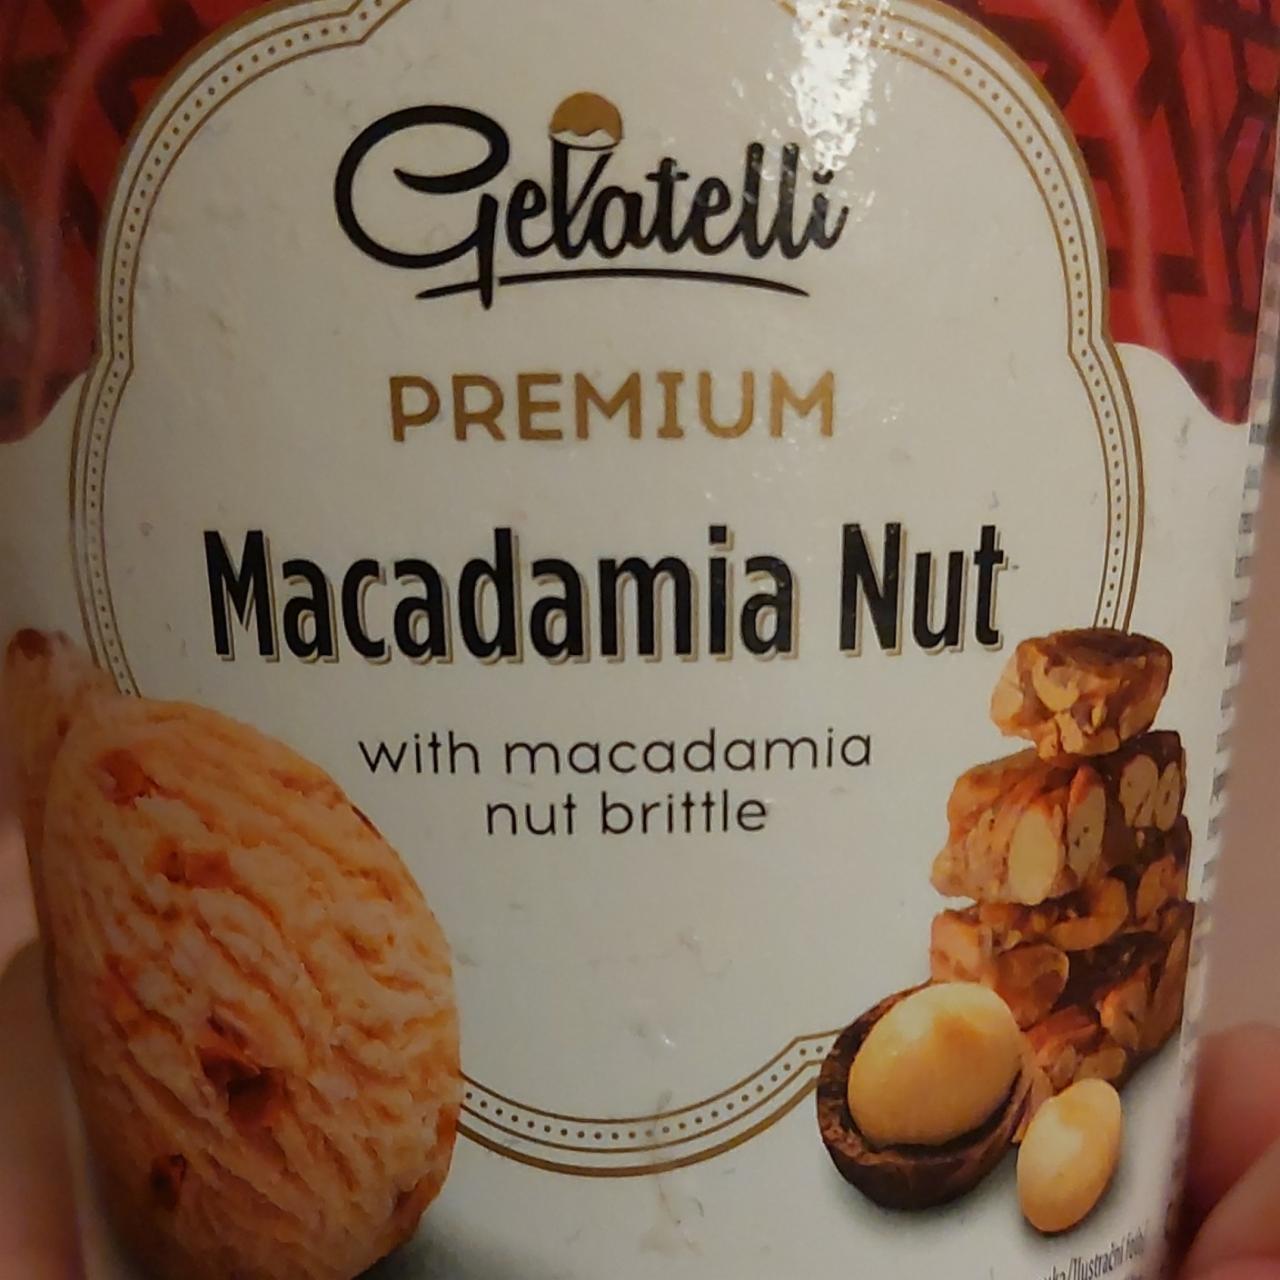 Fotografie - Premium Macadamia Nut with macadamia nut brittle Gelatelli